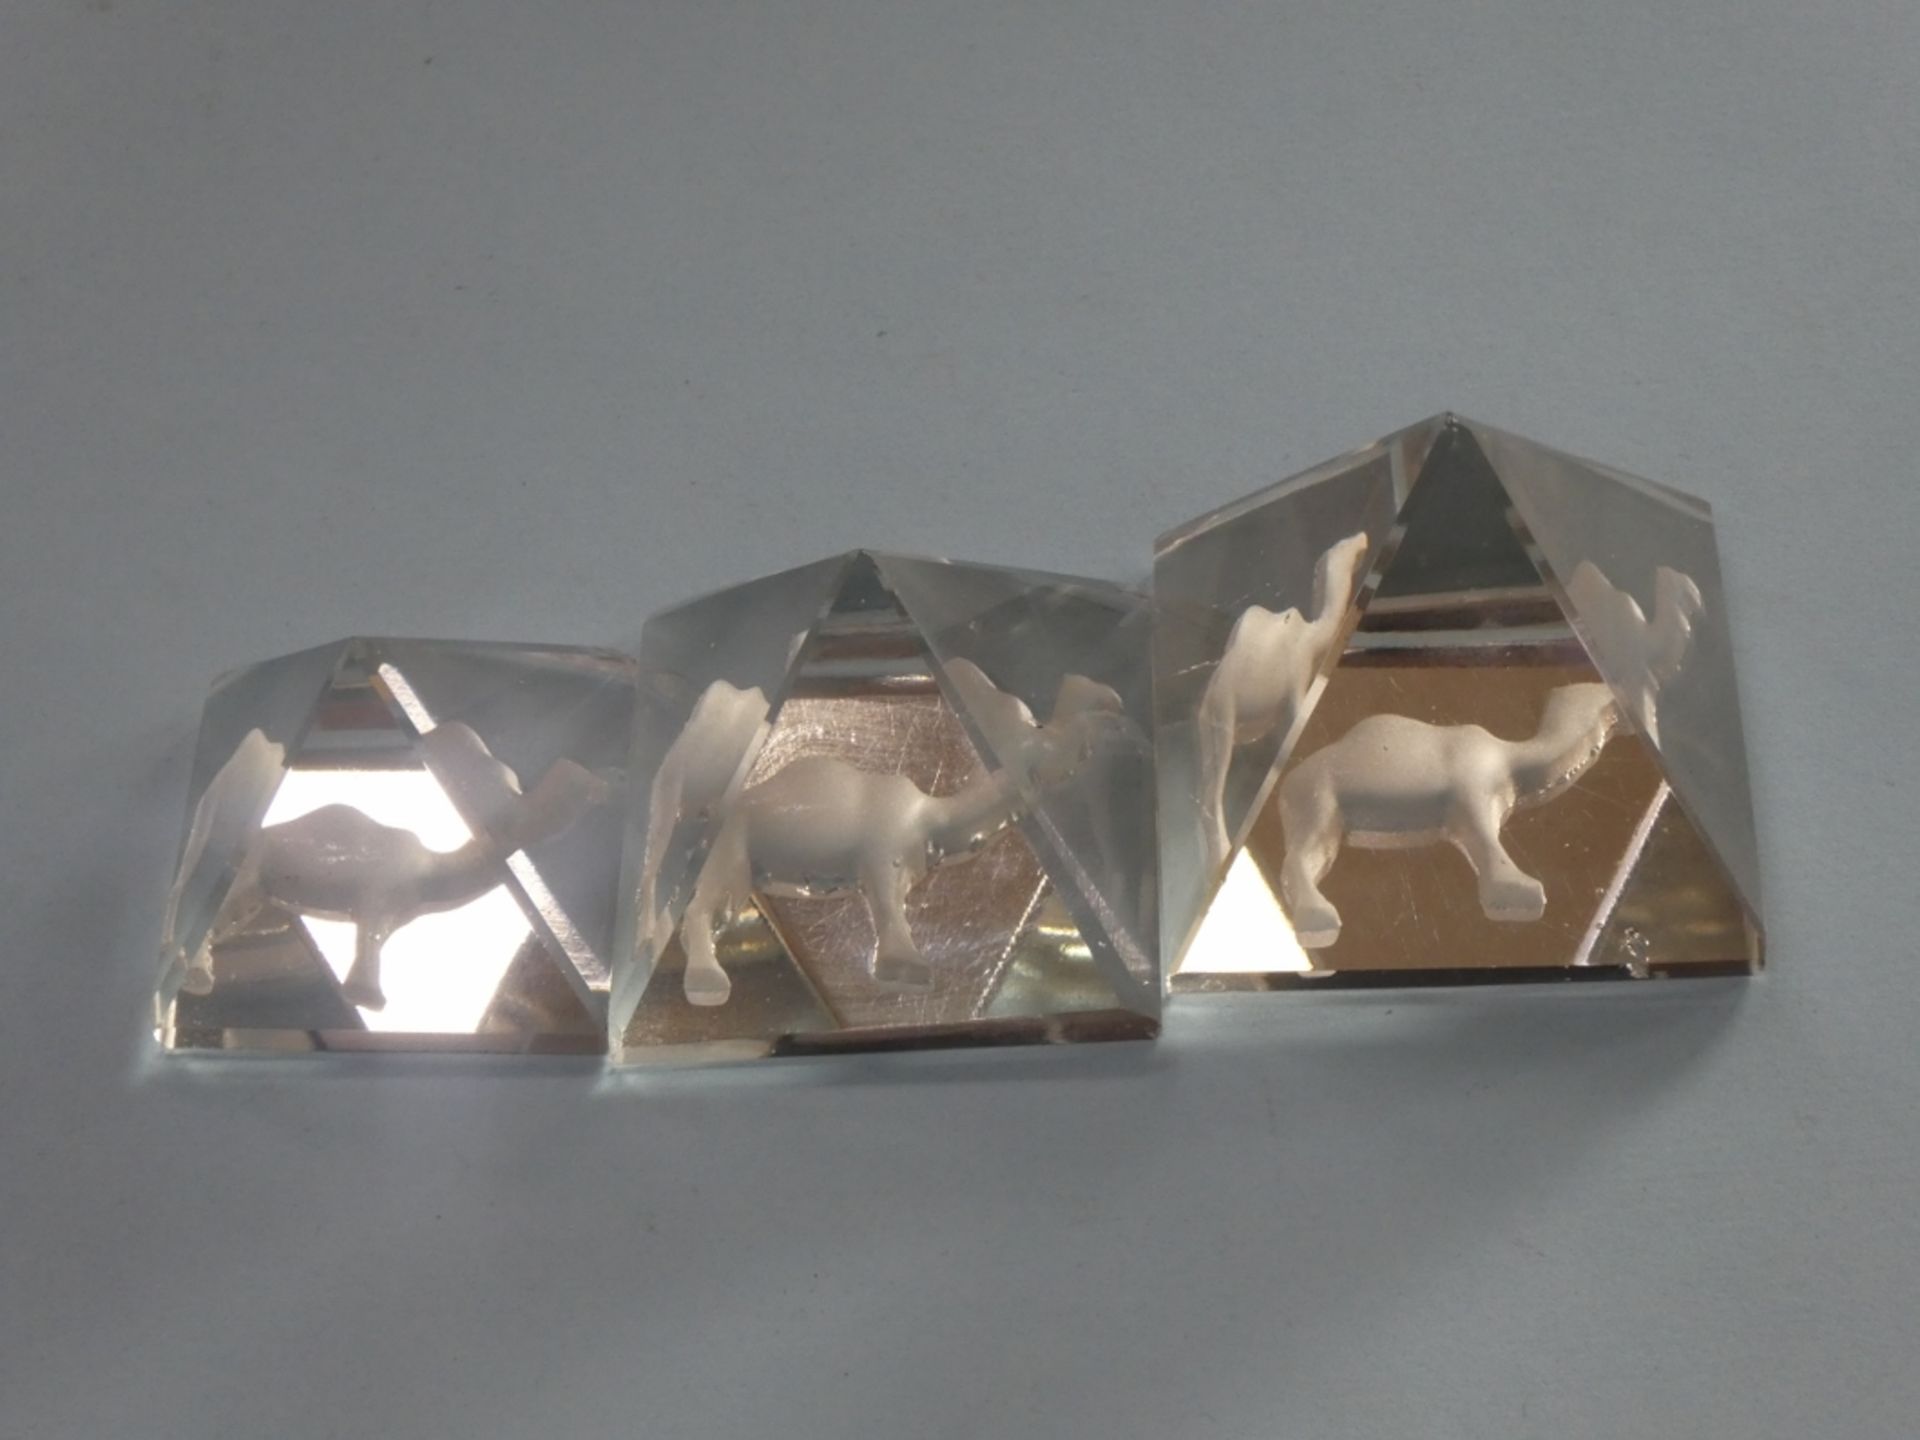 3 GLASS PYRAMIDS CA. 1970'S